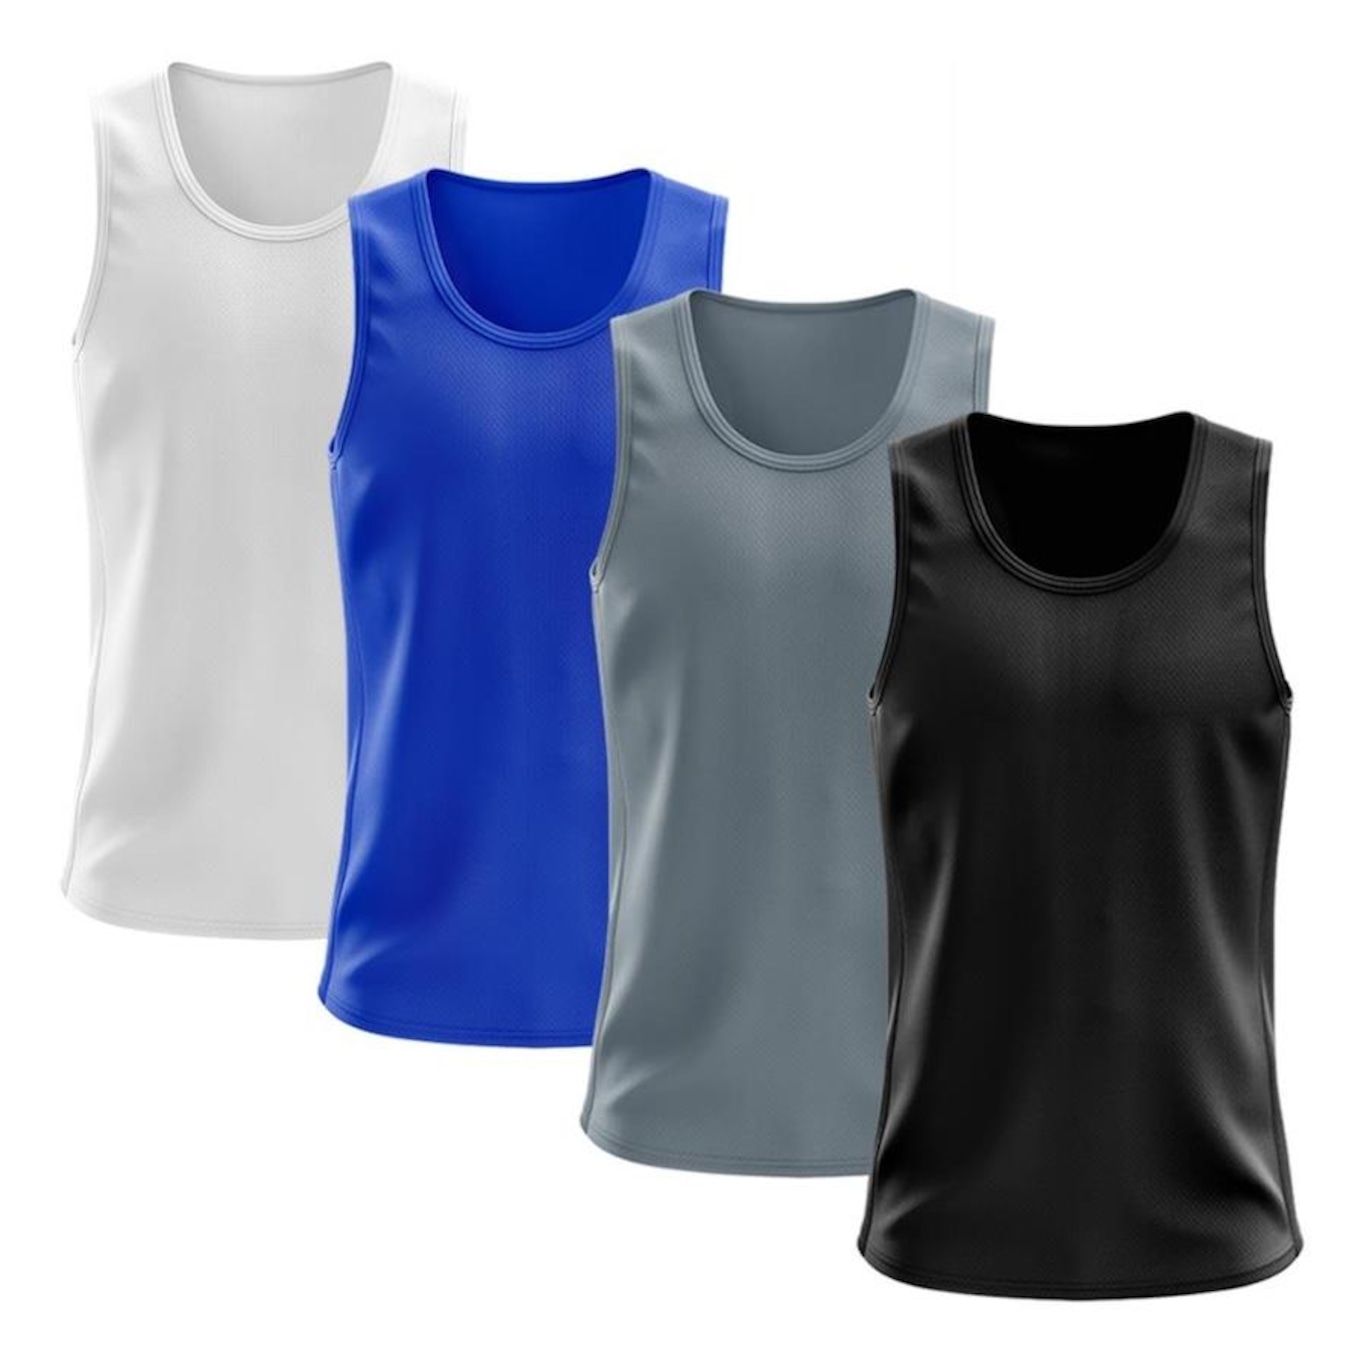 Camiseta Regata Térmica Whats Wear Dry Fit com Proteção Solar UV -  Masculina - 4 Unds em Promoção